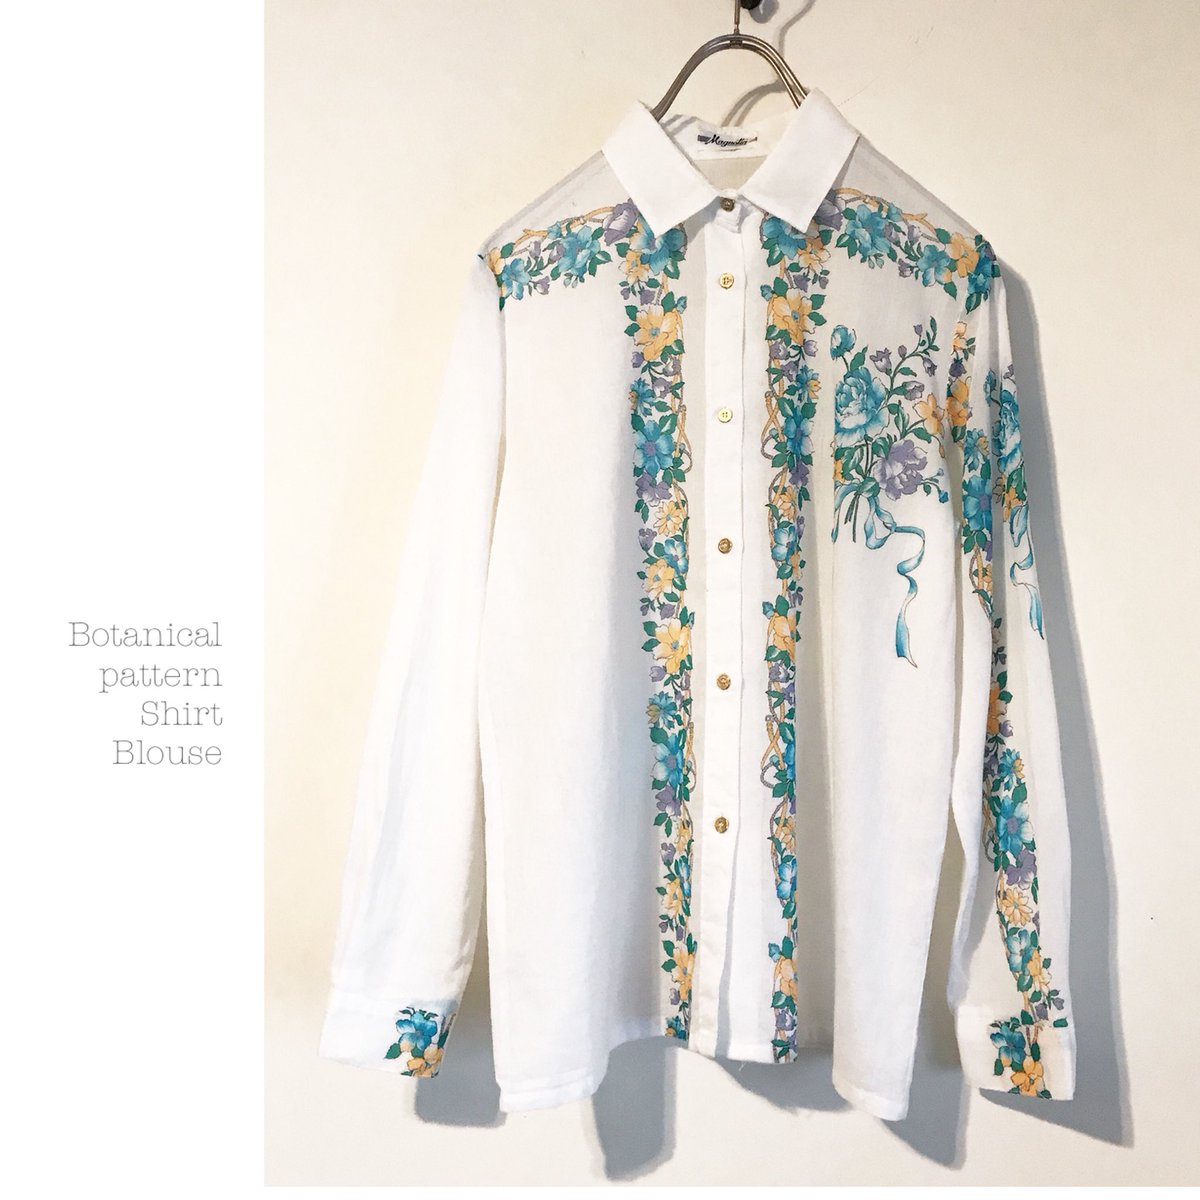 Taffee on Twitter: "#botanical #pattern #shirt #blouse 入荷☆ アシンメトリーに入った